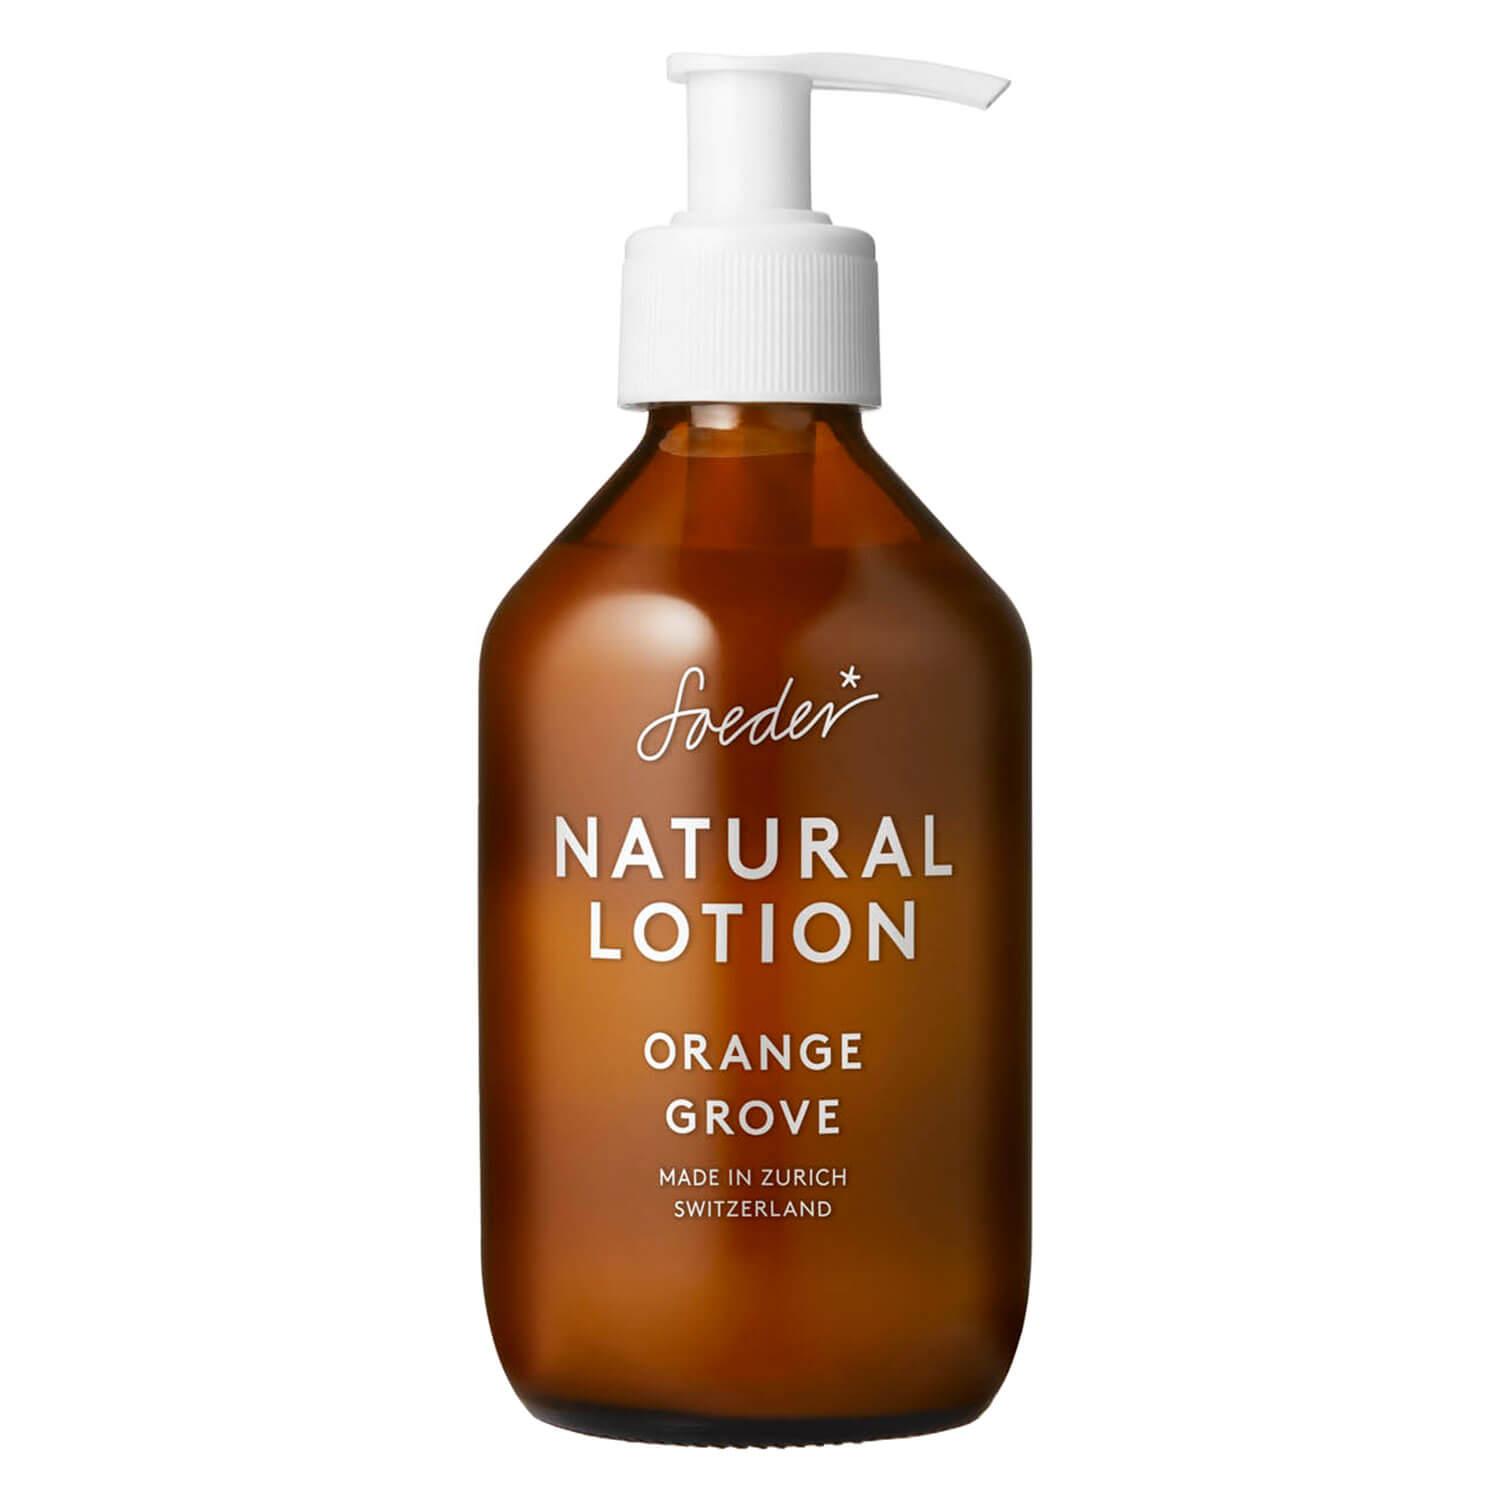 Soeder - Natural Lotion Orange Grove